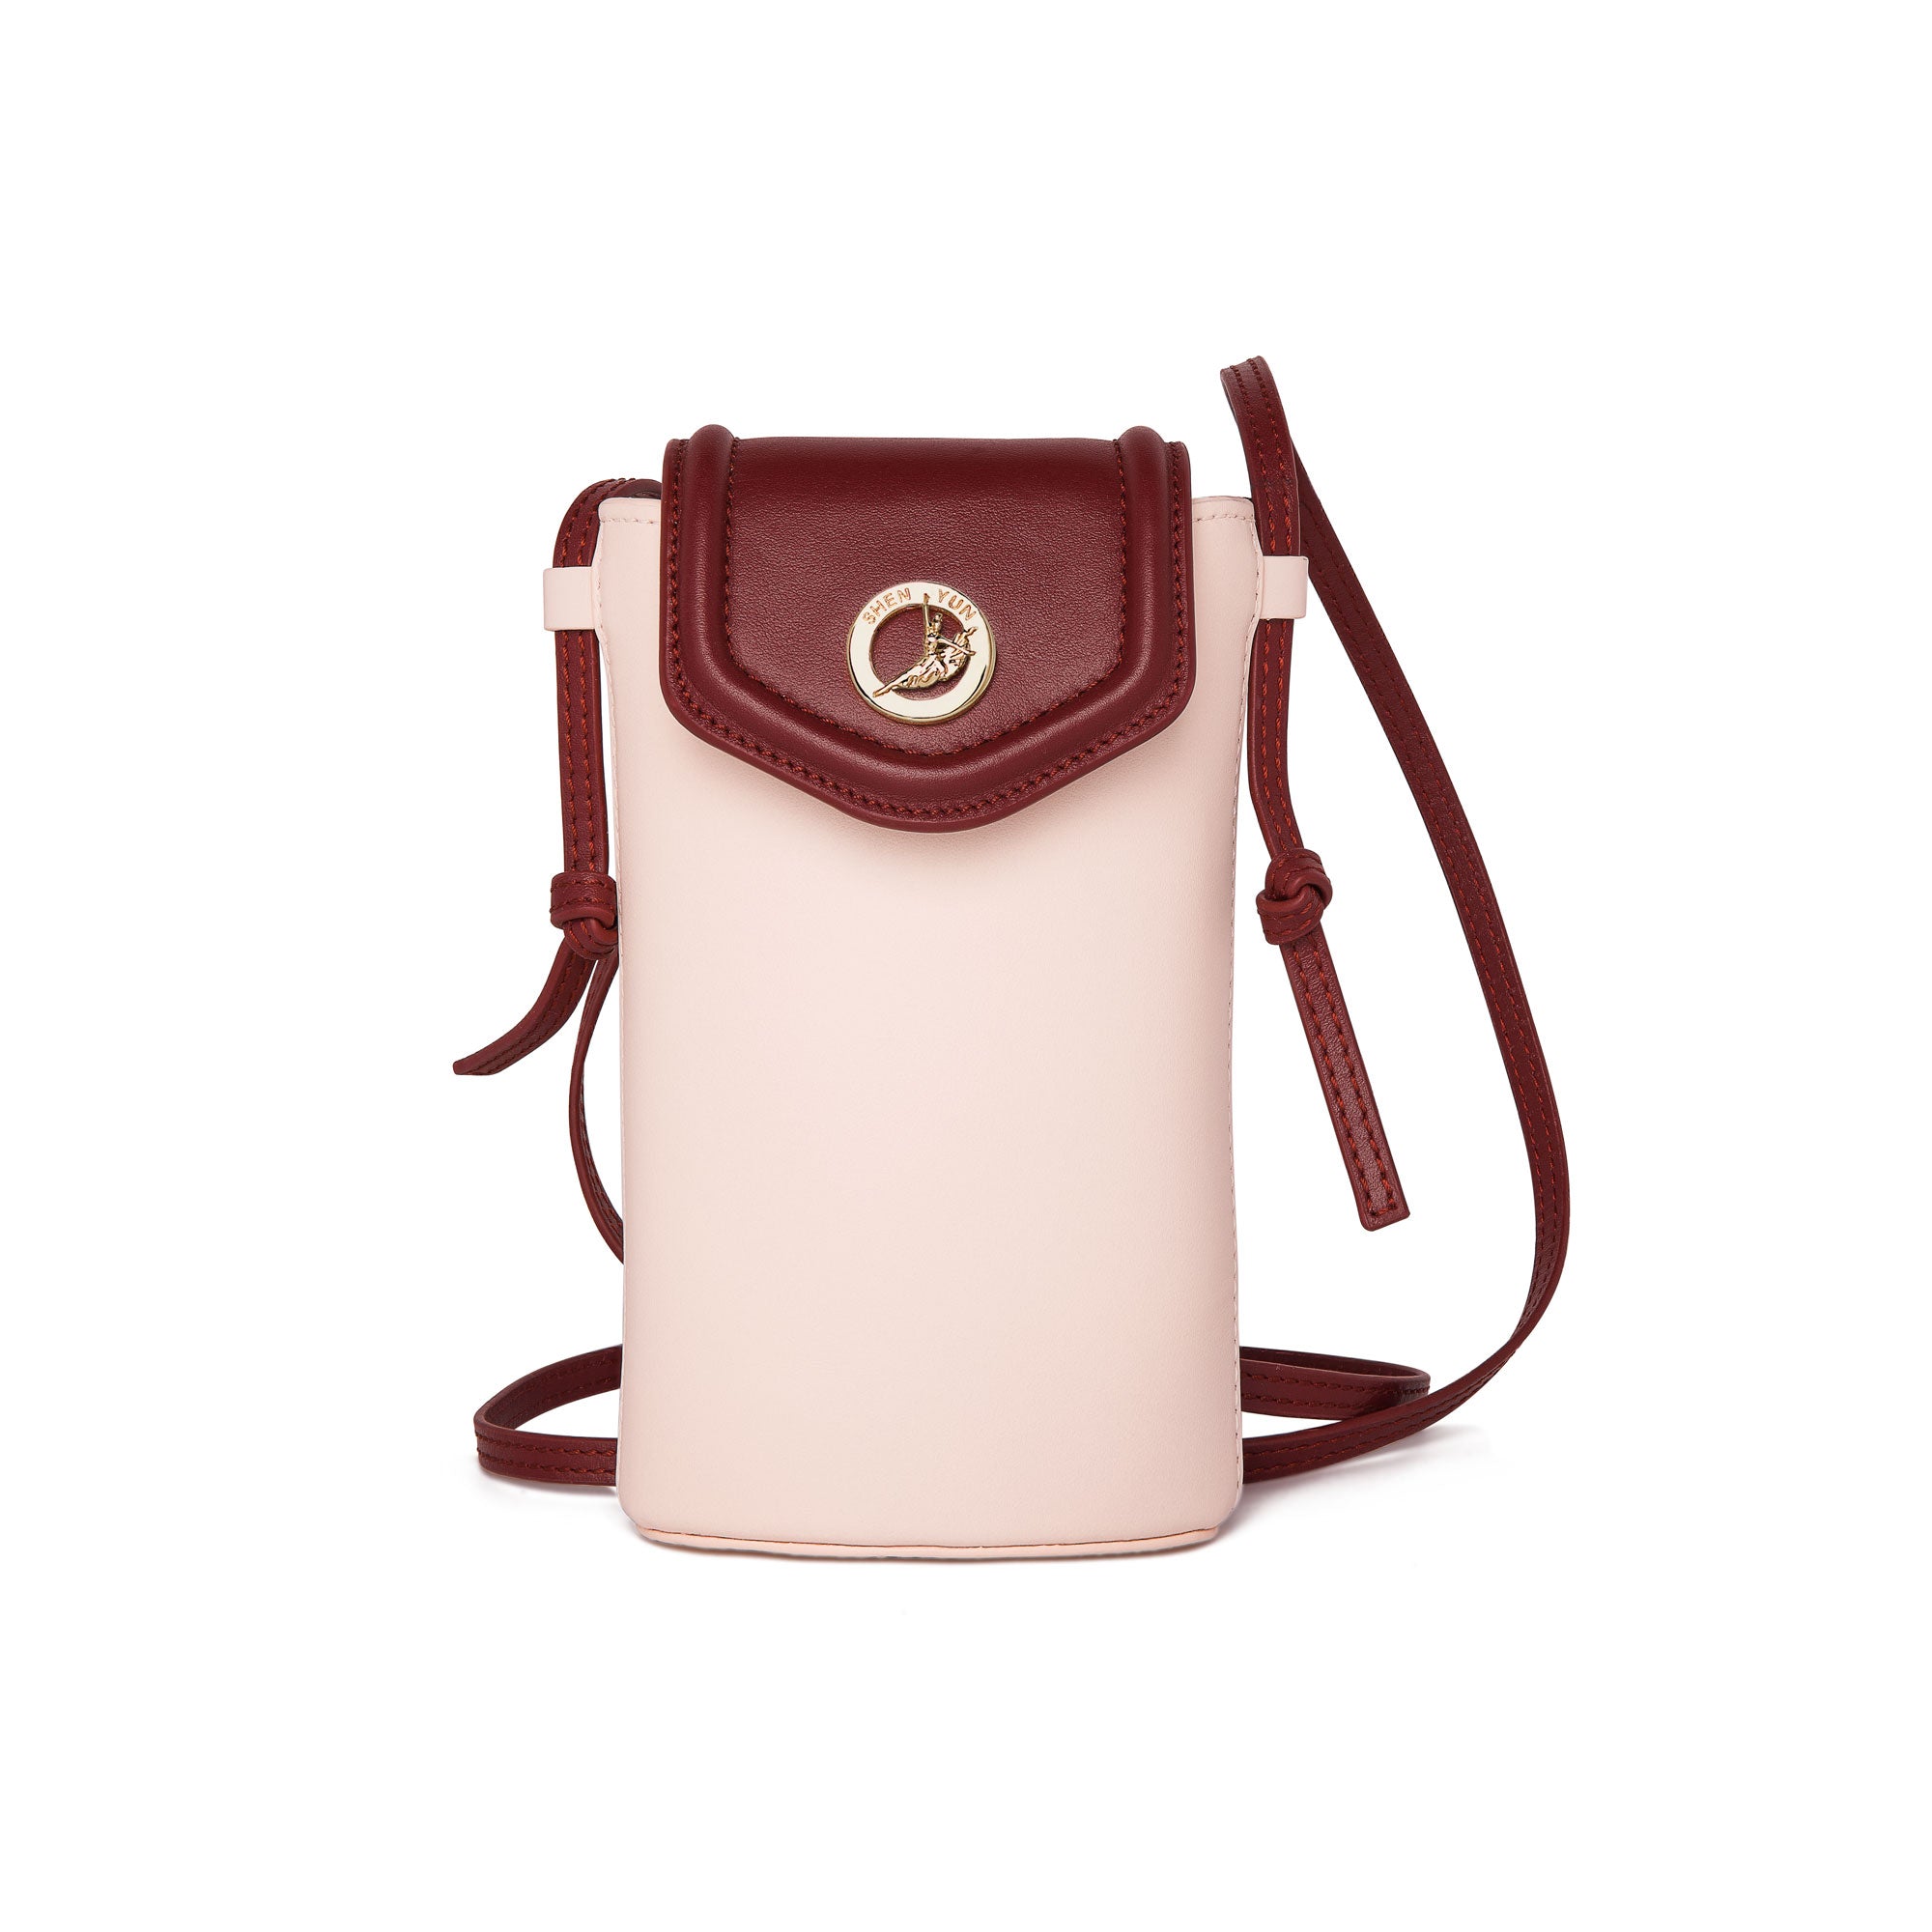 The Spirit of Mulan Phone Bag Pink Front View | Shen Yun Shop 